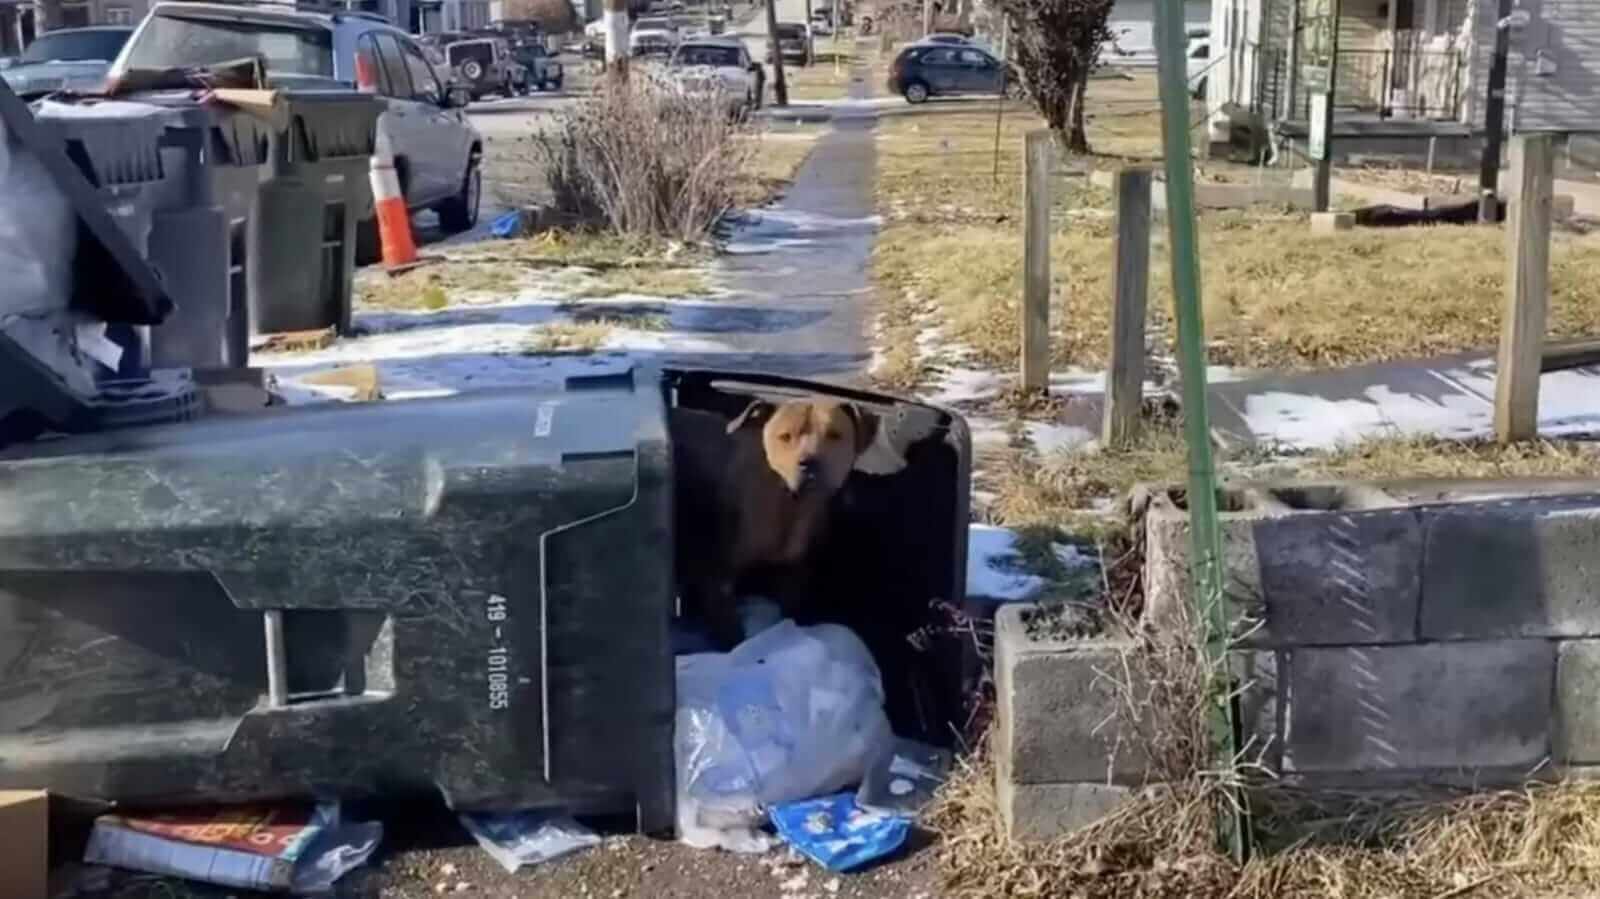 Cachorro em lata de lixo